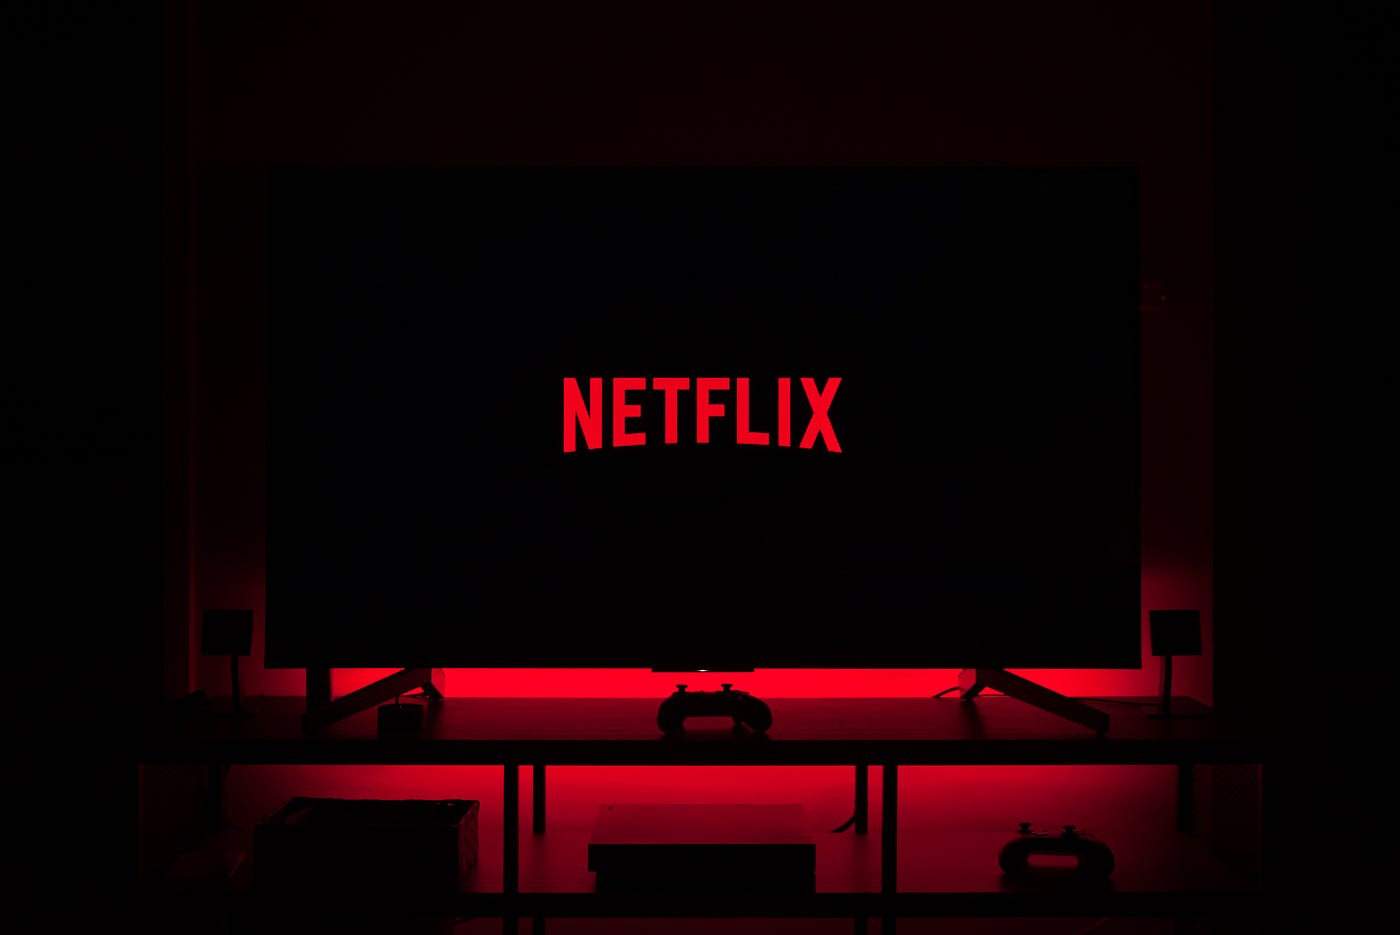 Netflix on TV